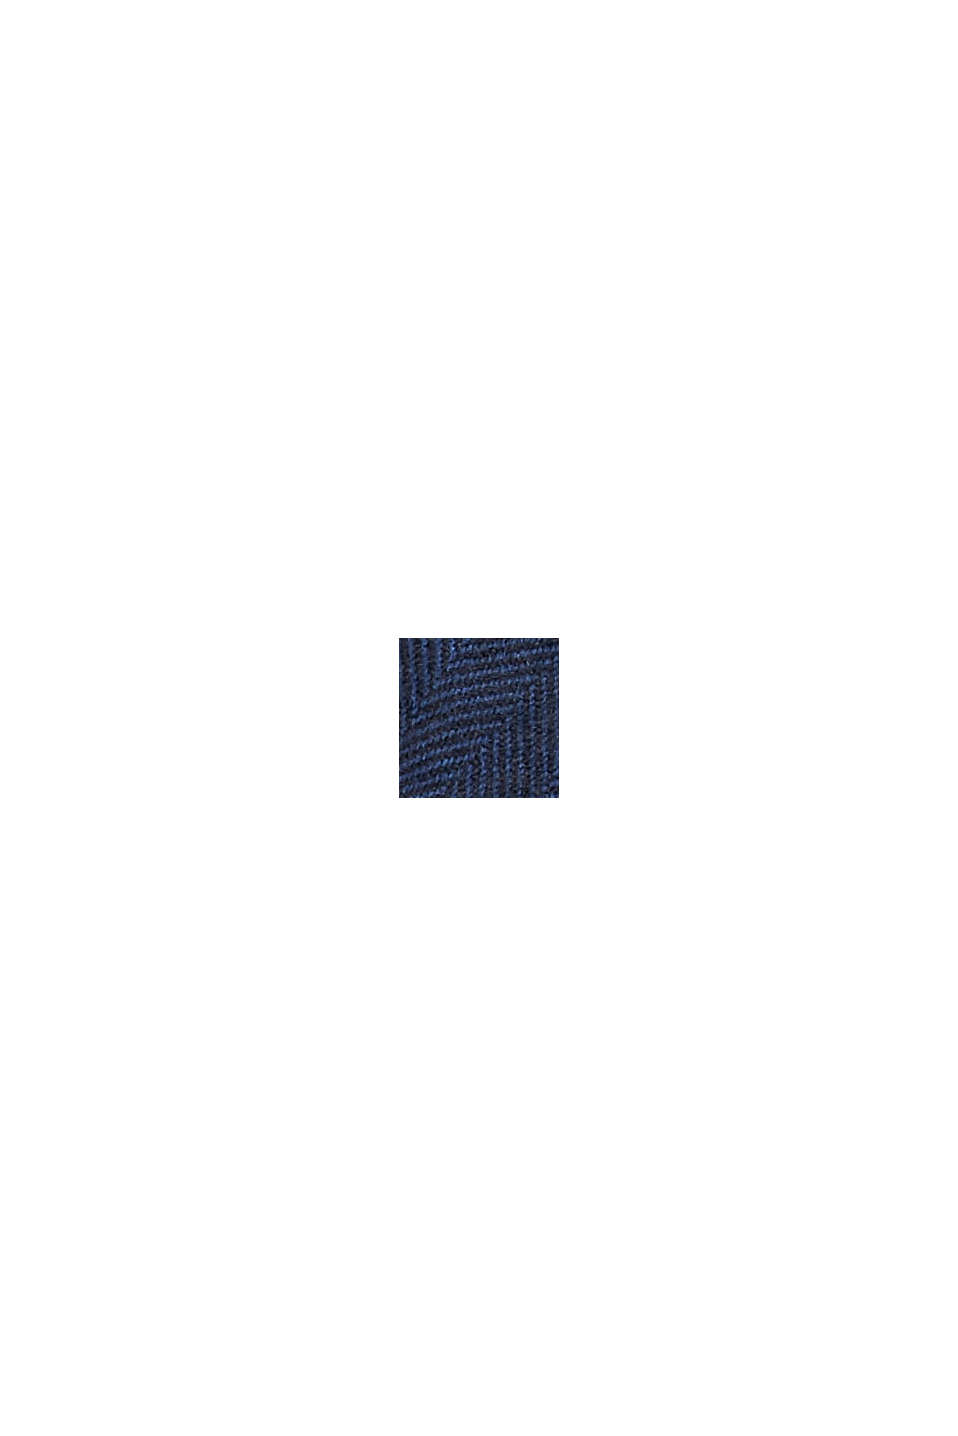 Genanvendte materialer: vævet tørklæde med sildebensmønster, DARK BLUE, swatch